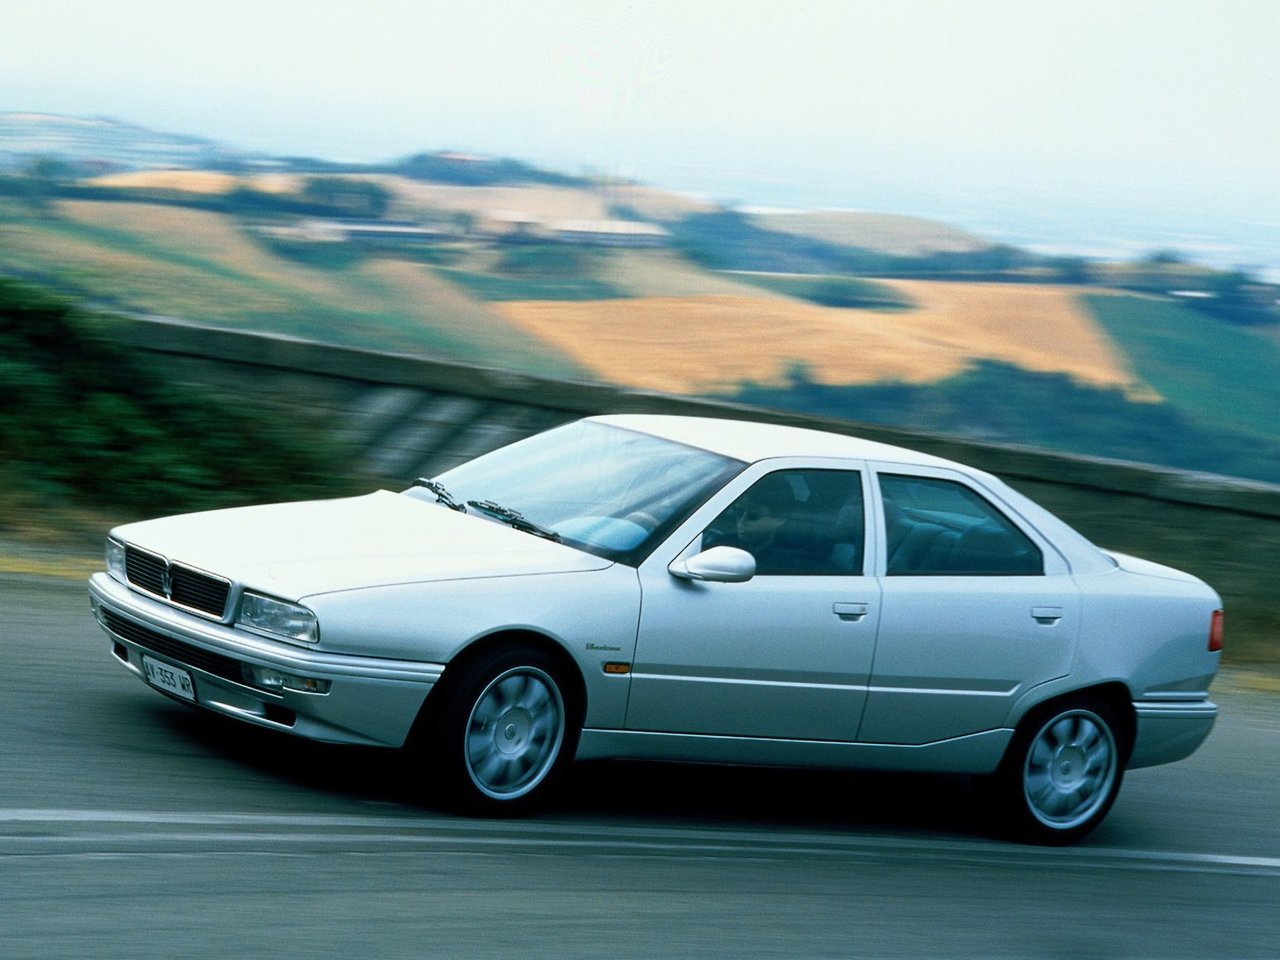 Расход газа четырёх комплектаций седана Maserati Quattroporte. Разница стоимости заправки газом и бензином. Автономный пробег до и после установки ГБО.